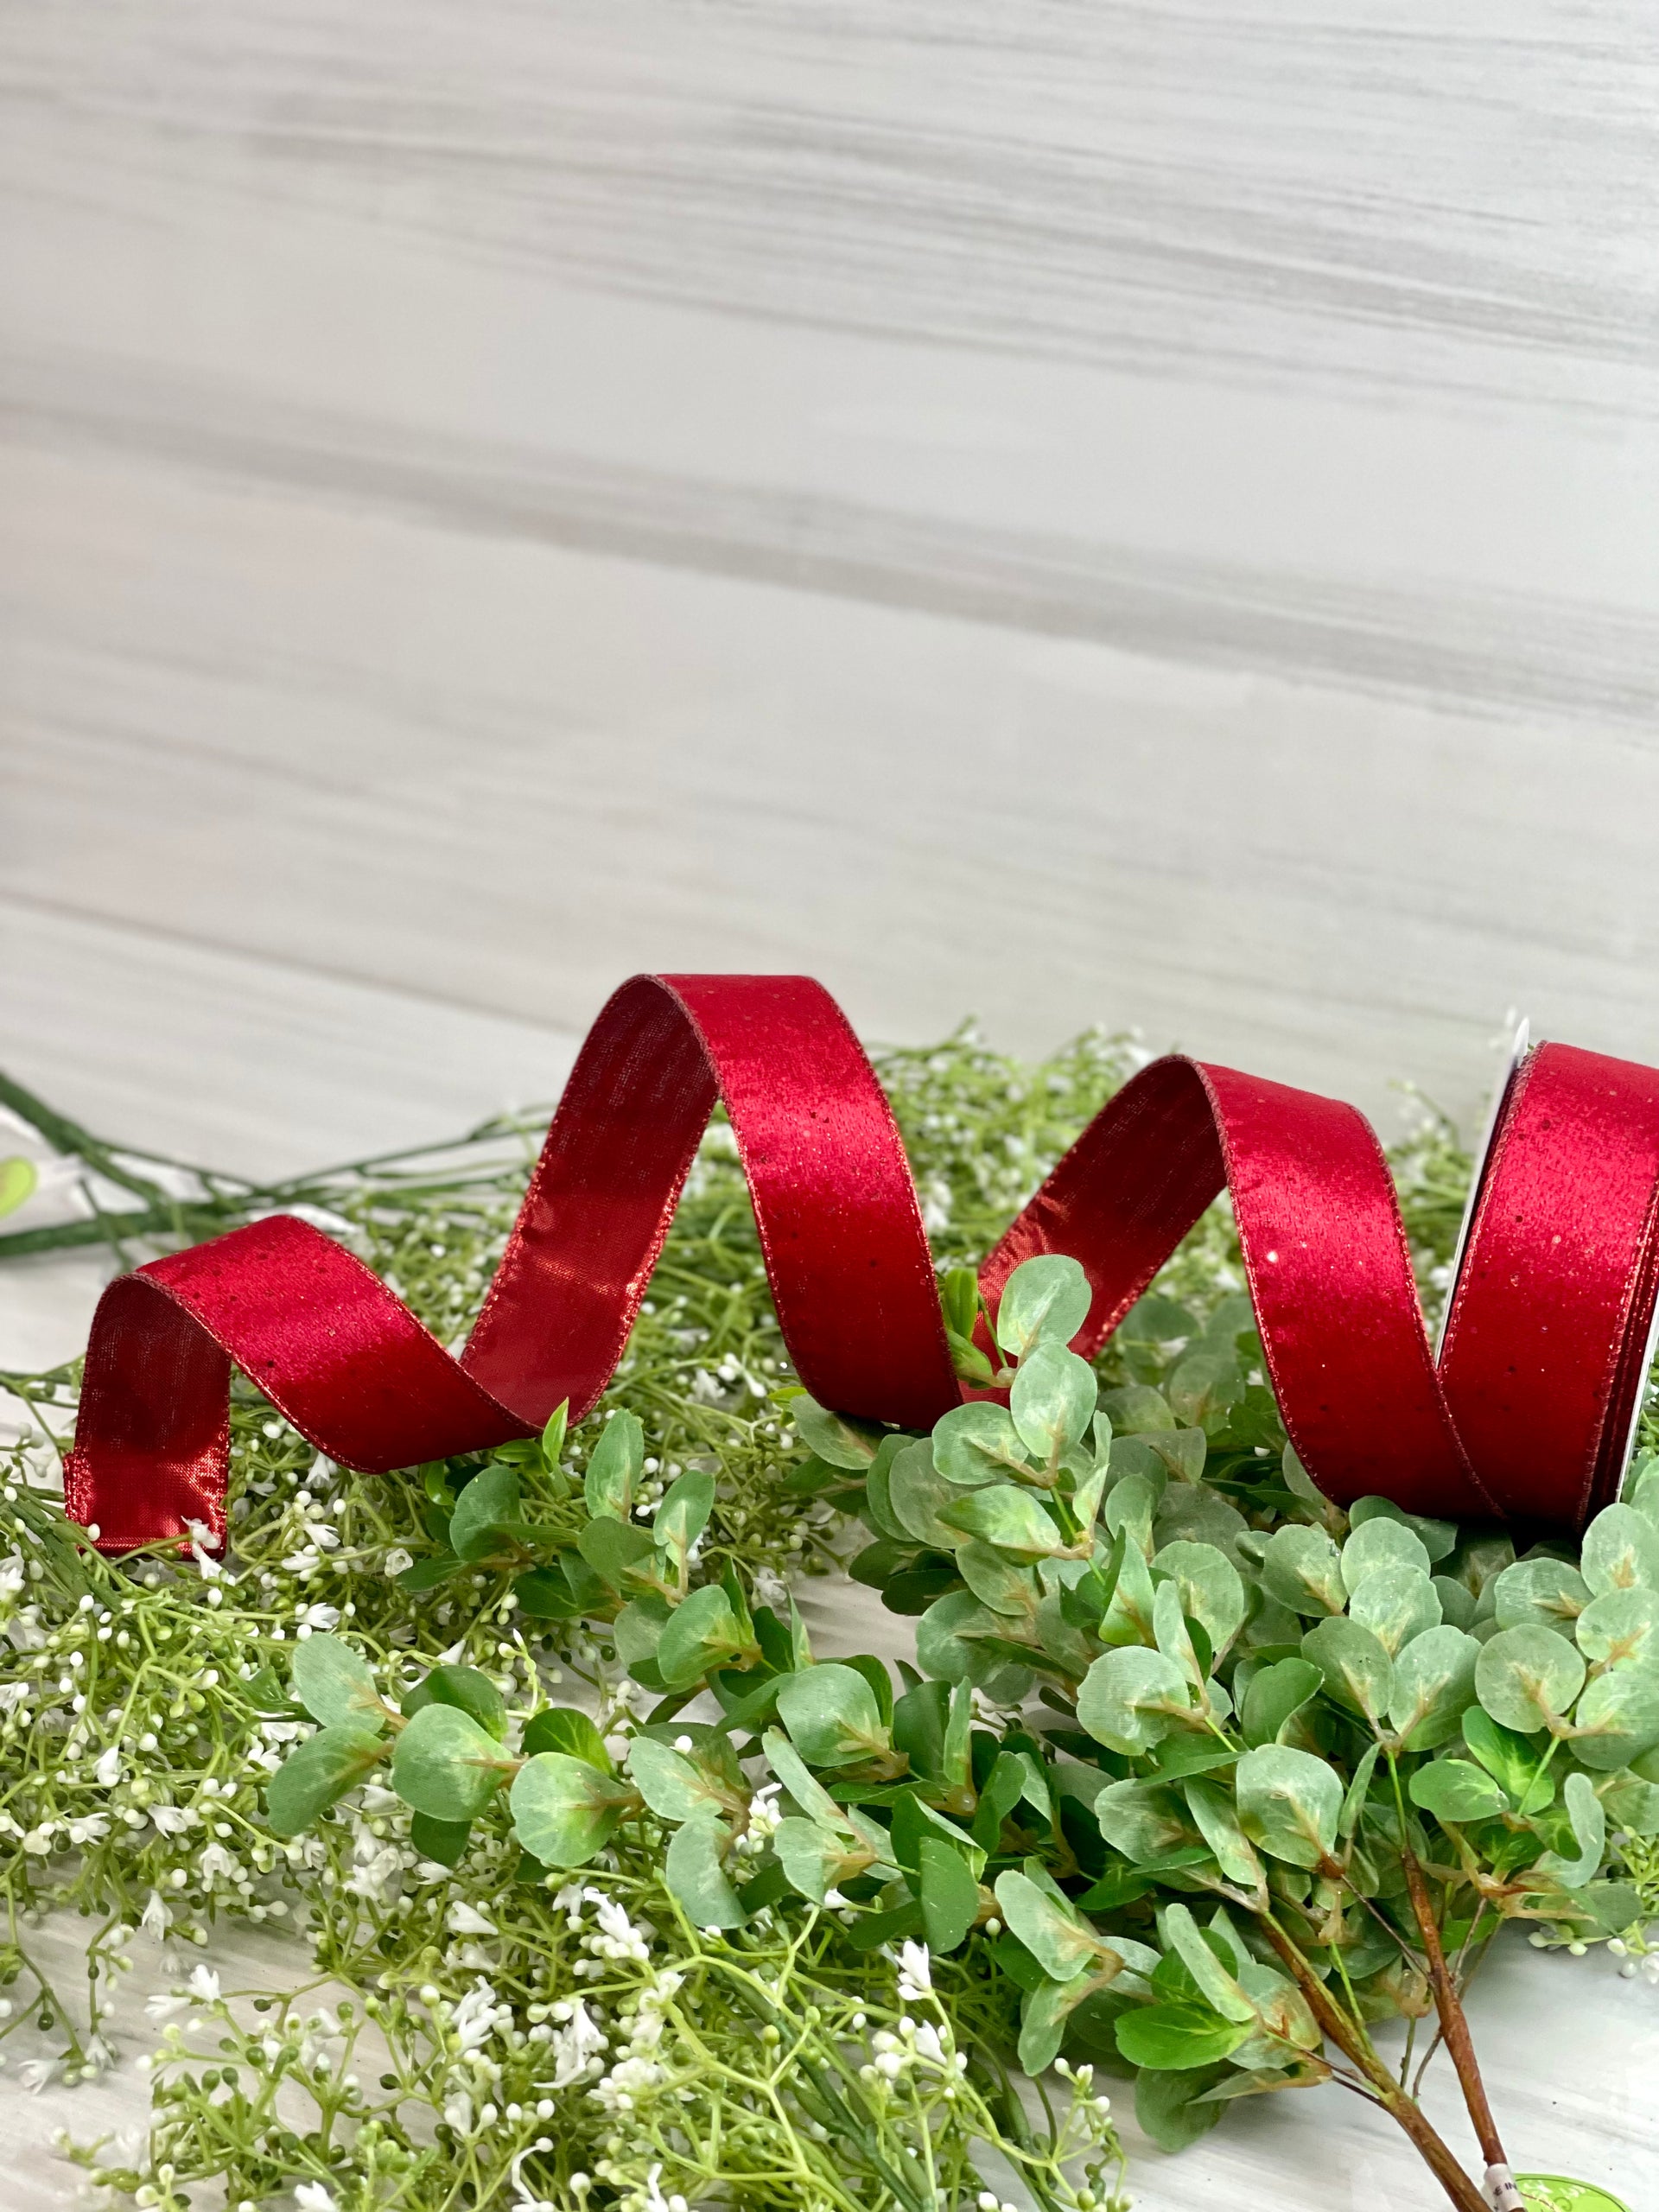 DIY Ornament With Glitter & Velvet Ribbon - Summer Adams